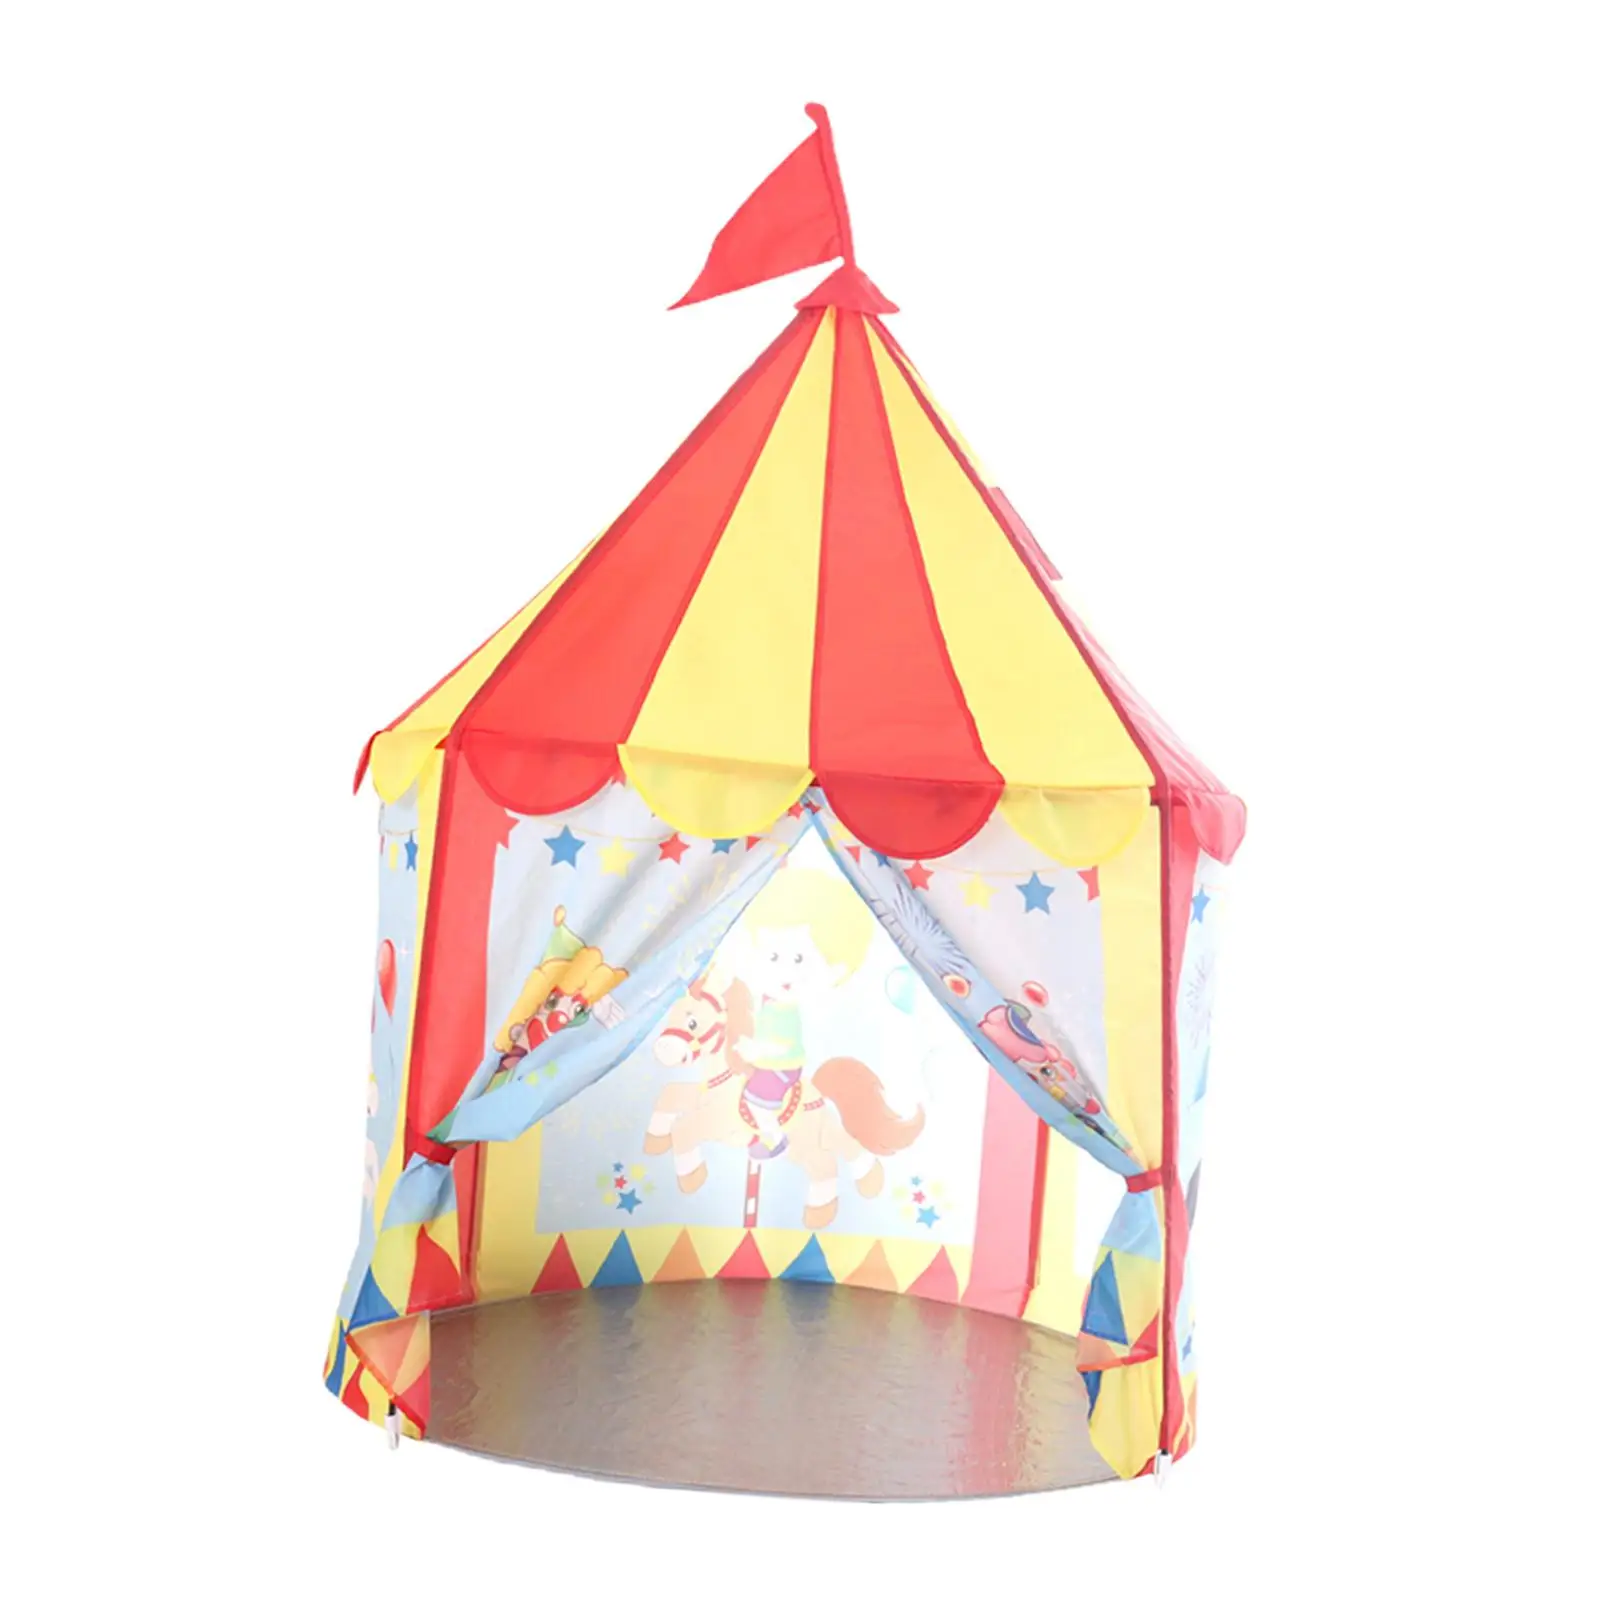 Play Tent Indoor Outdoor Tent Prince Castle Tent Children Castle Playhous for Garden Camping Yard Children